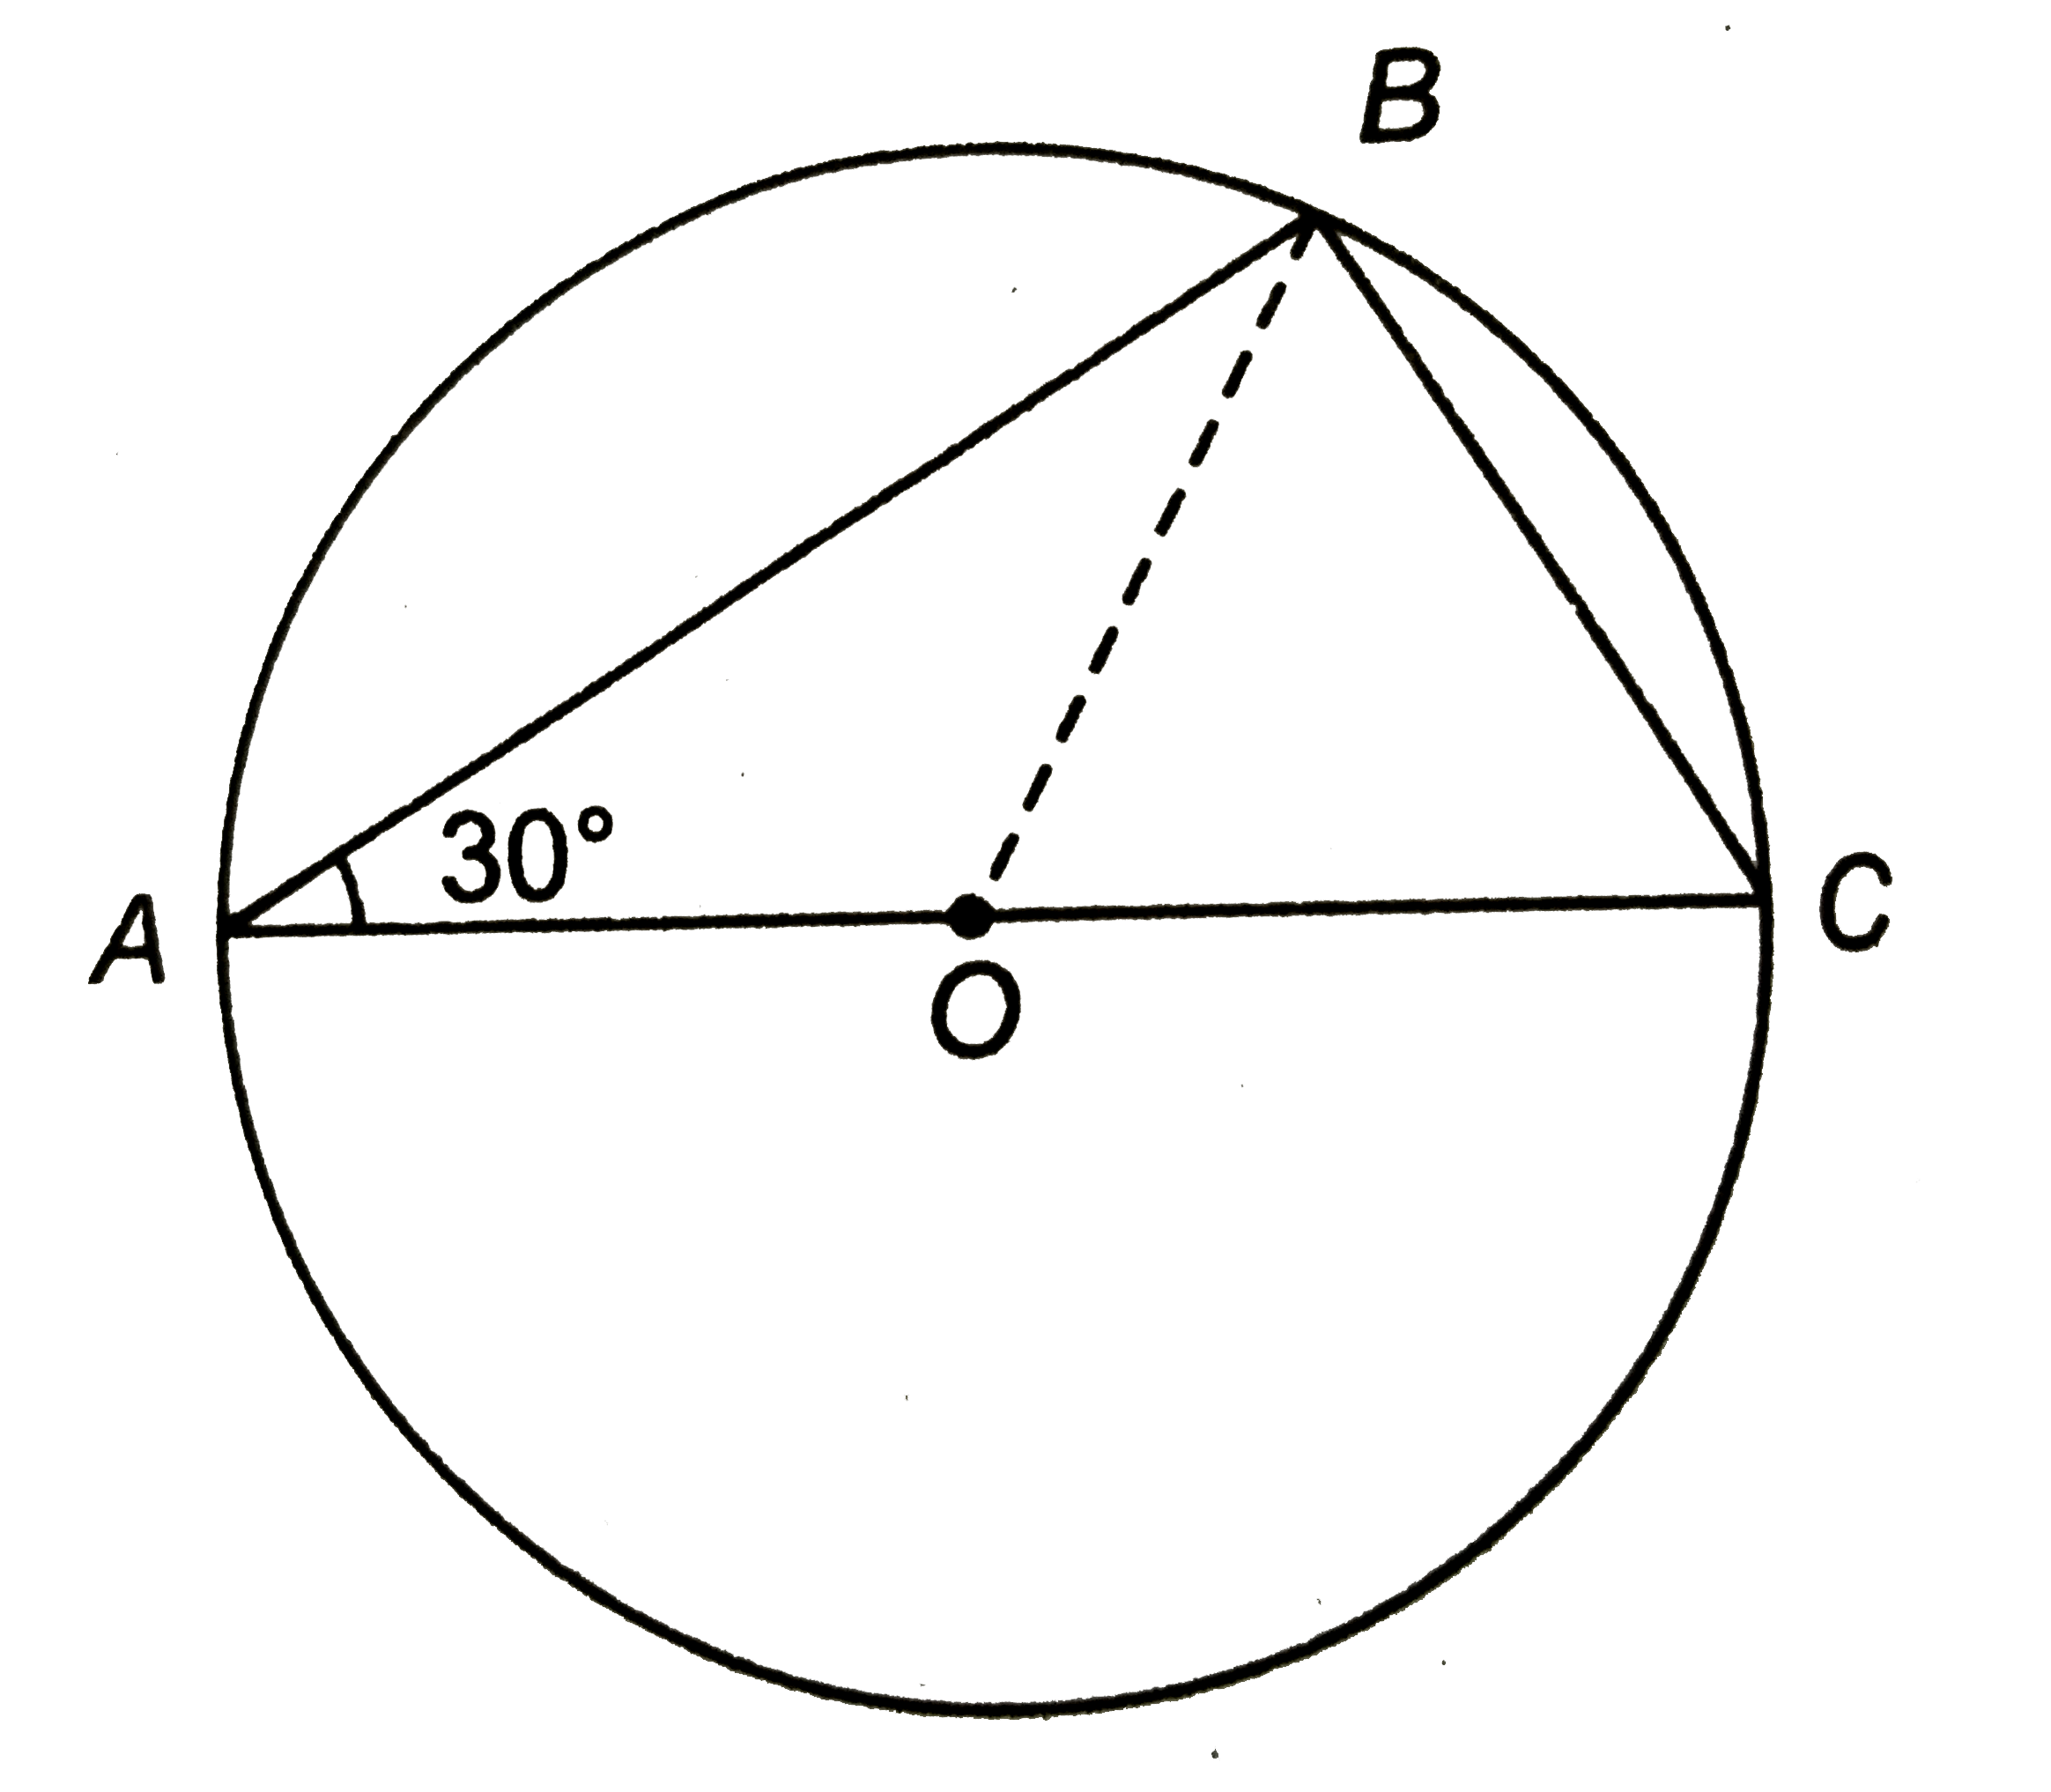 संलग्न चित्र में 'O' वृत्त का केन्द्र है तथा AC व्यास है | यदि angleBAC=30^(@), तो angleBOC ज्ञात कीजिए |